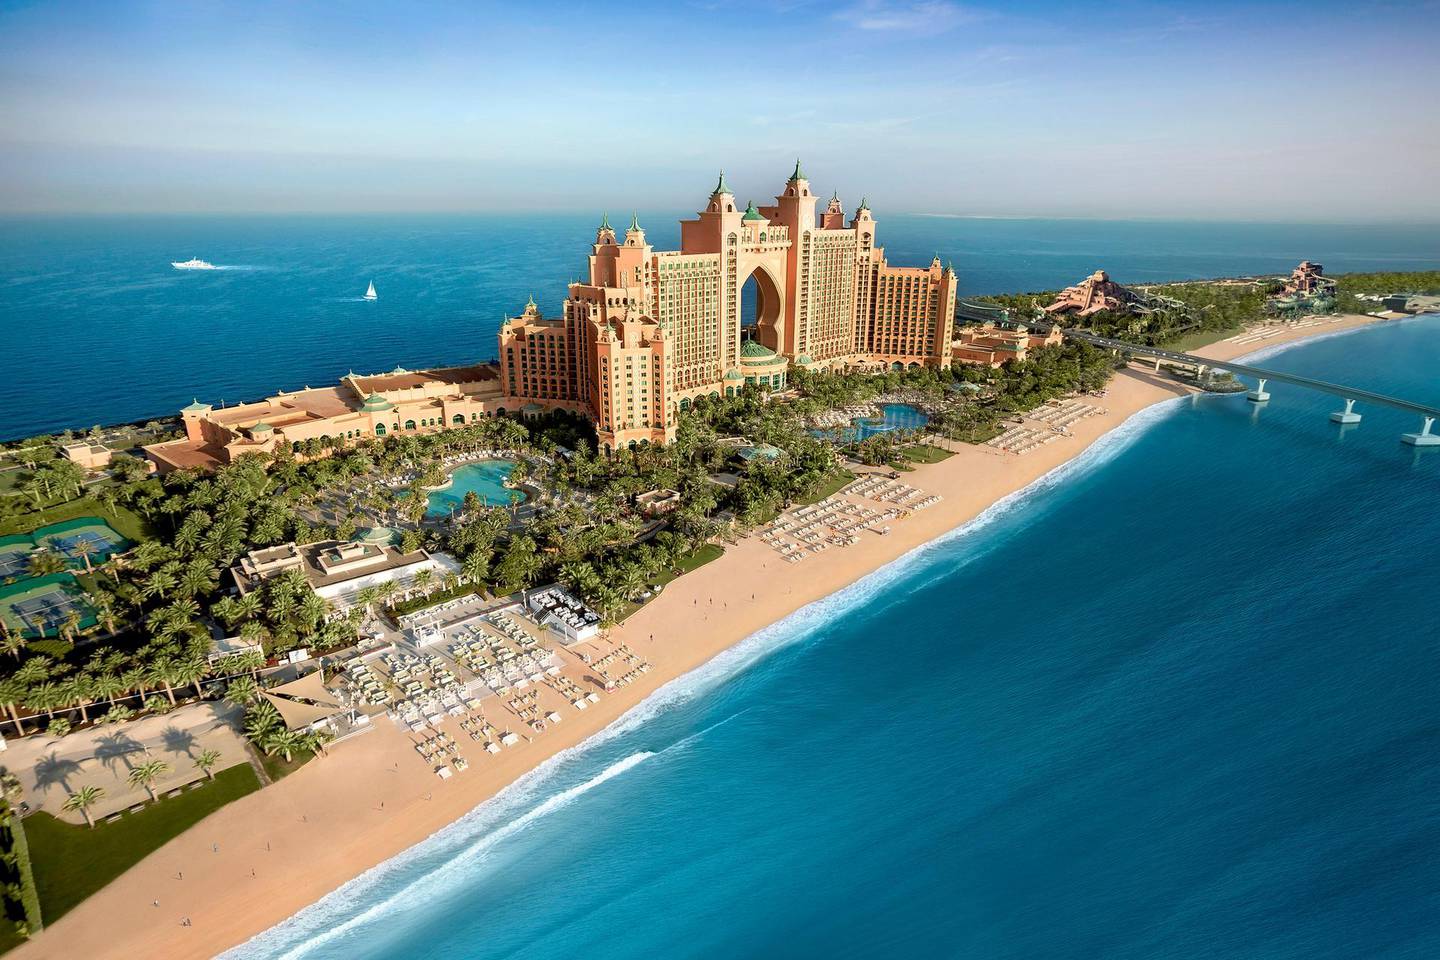 White Beach is set to open at Atlantis, The Palm. Courtesy Atlantis, The Palm